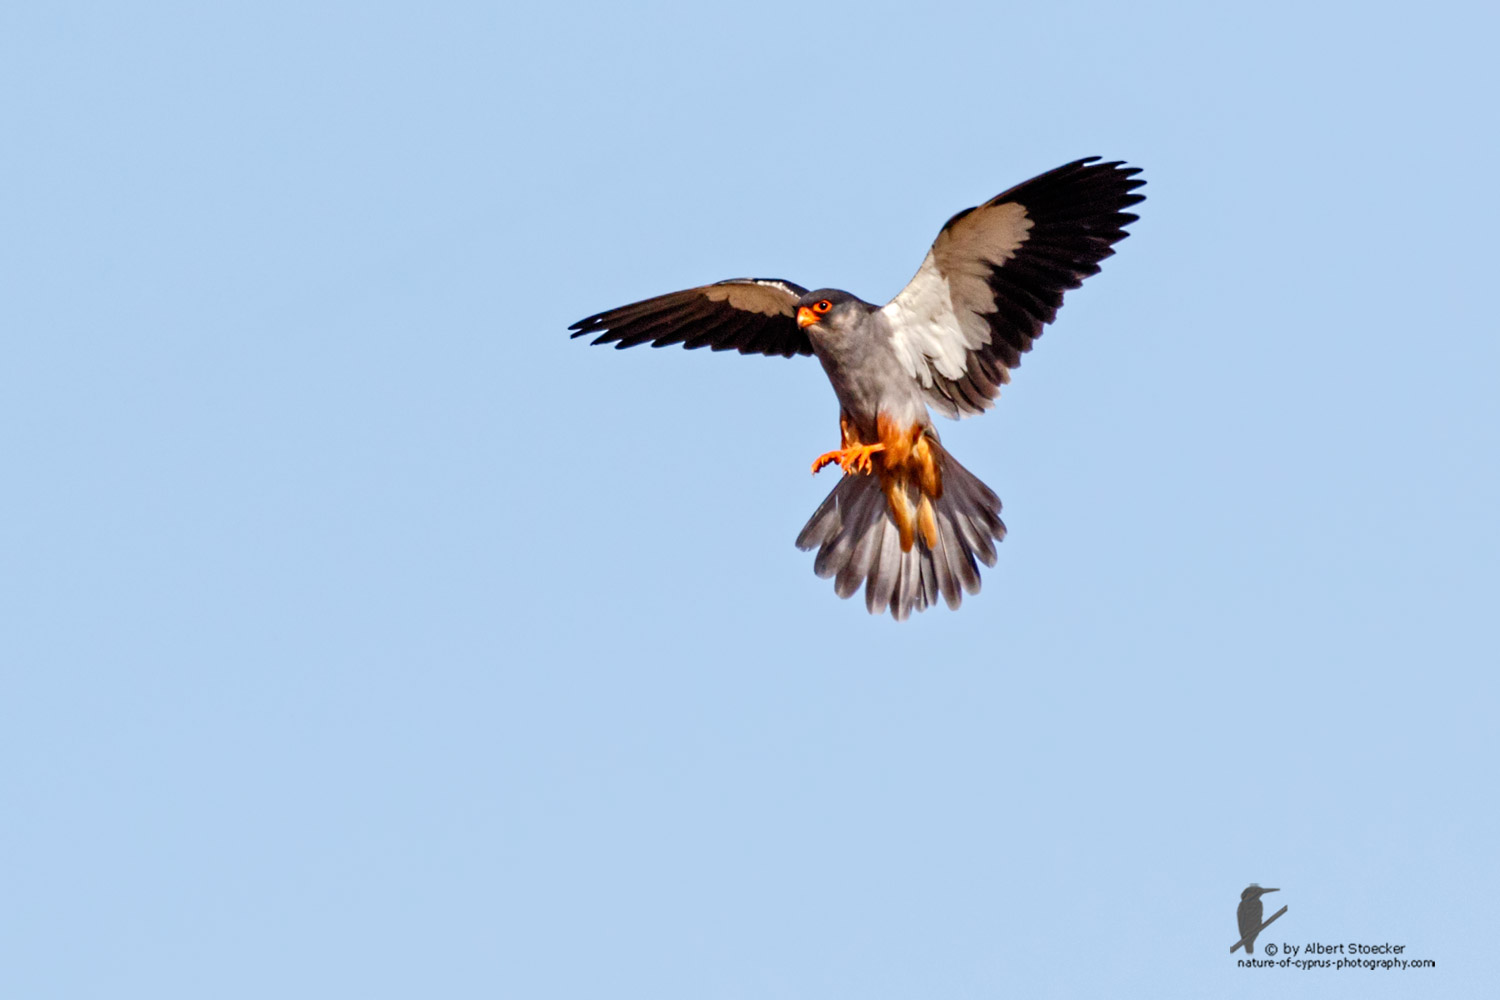 Falco amurensis - Amur falcon - Amurfalke, Cyprus, Agia Varvara - Anarita, Paphos, Mai 2016